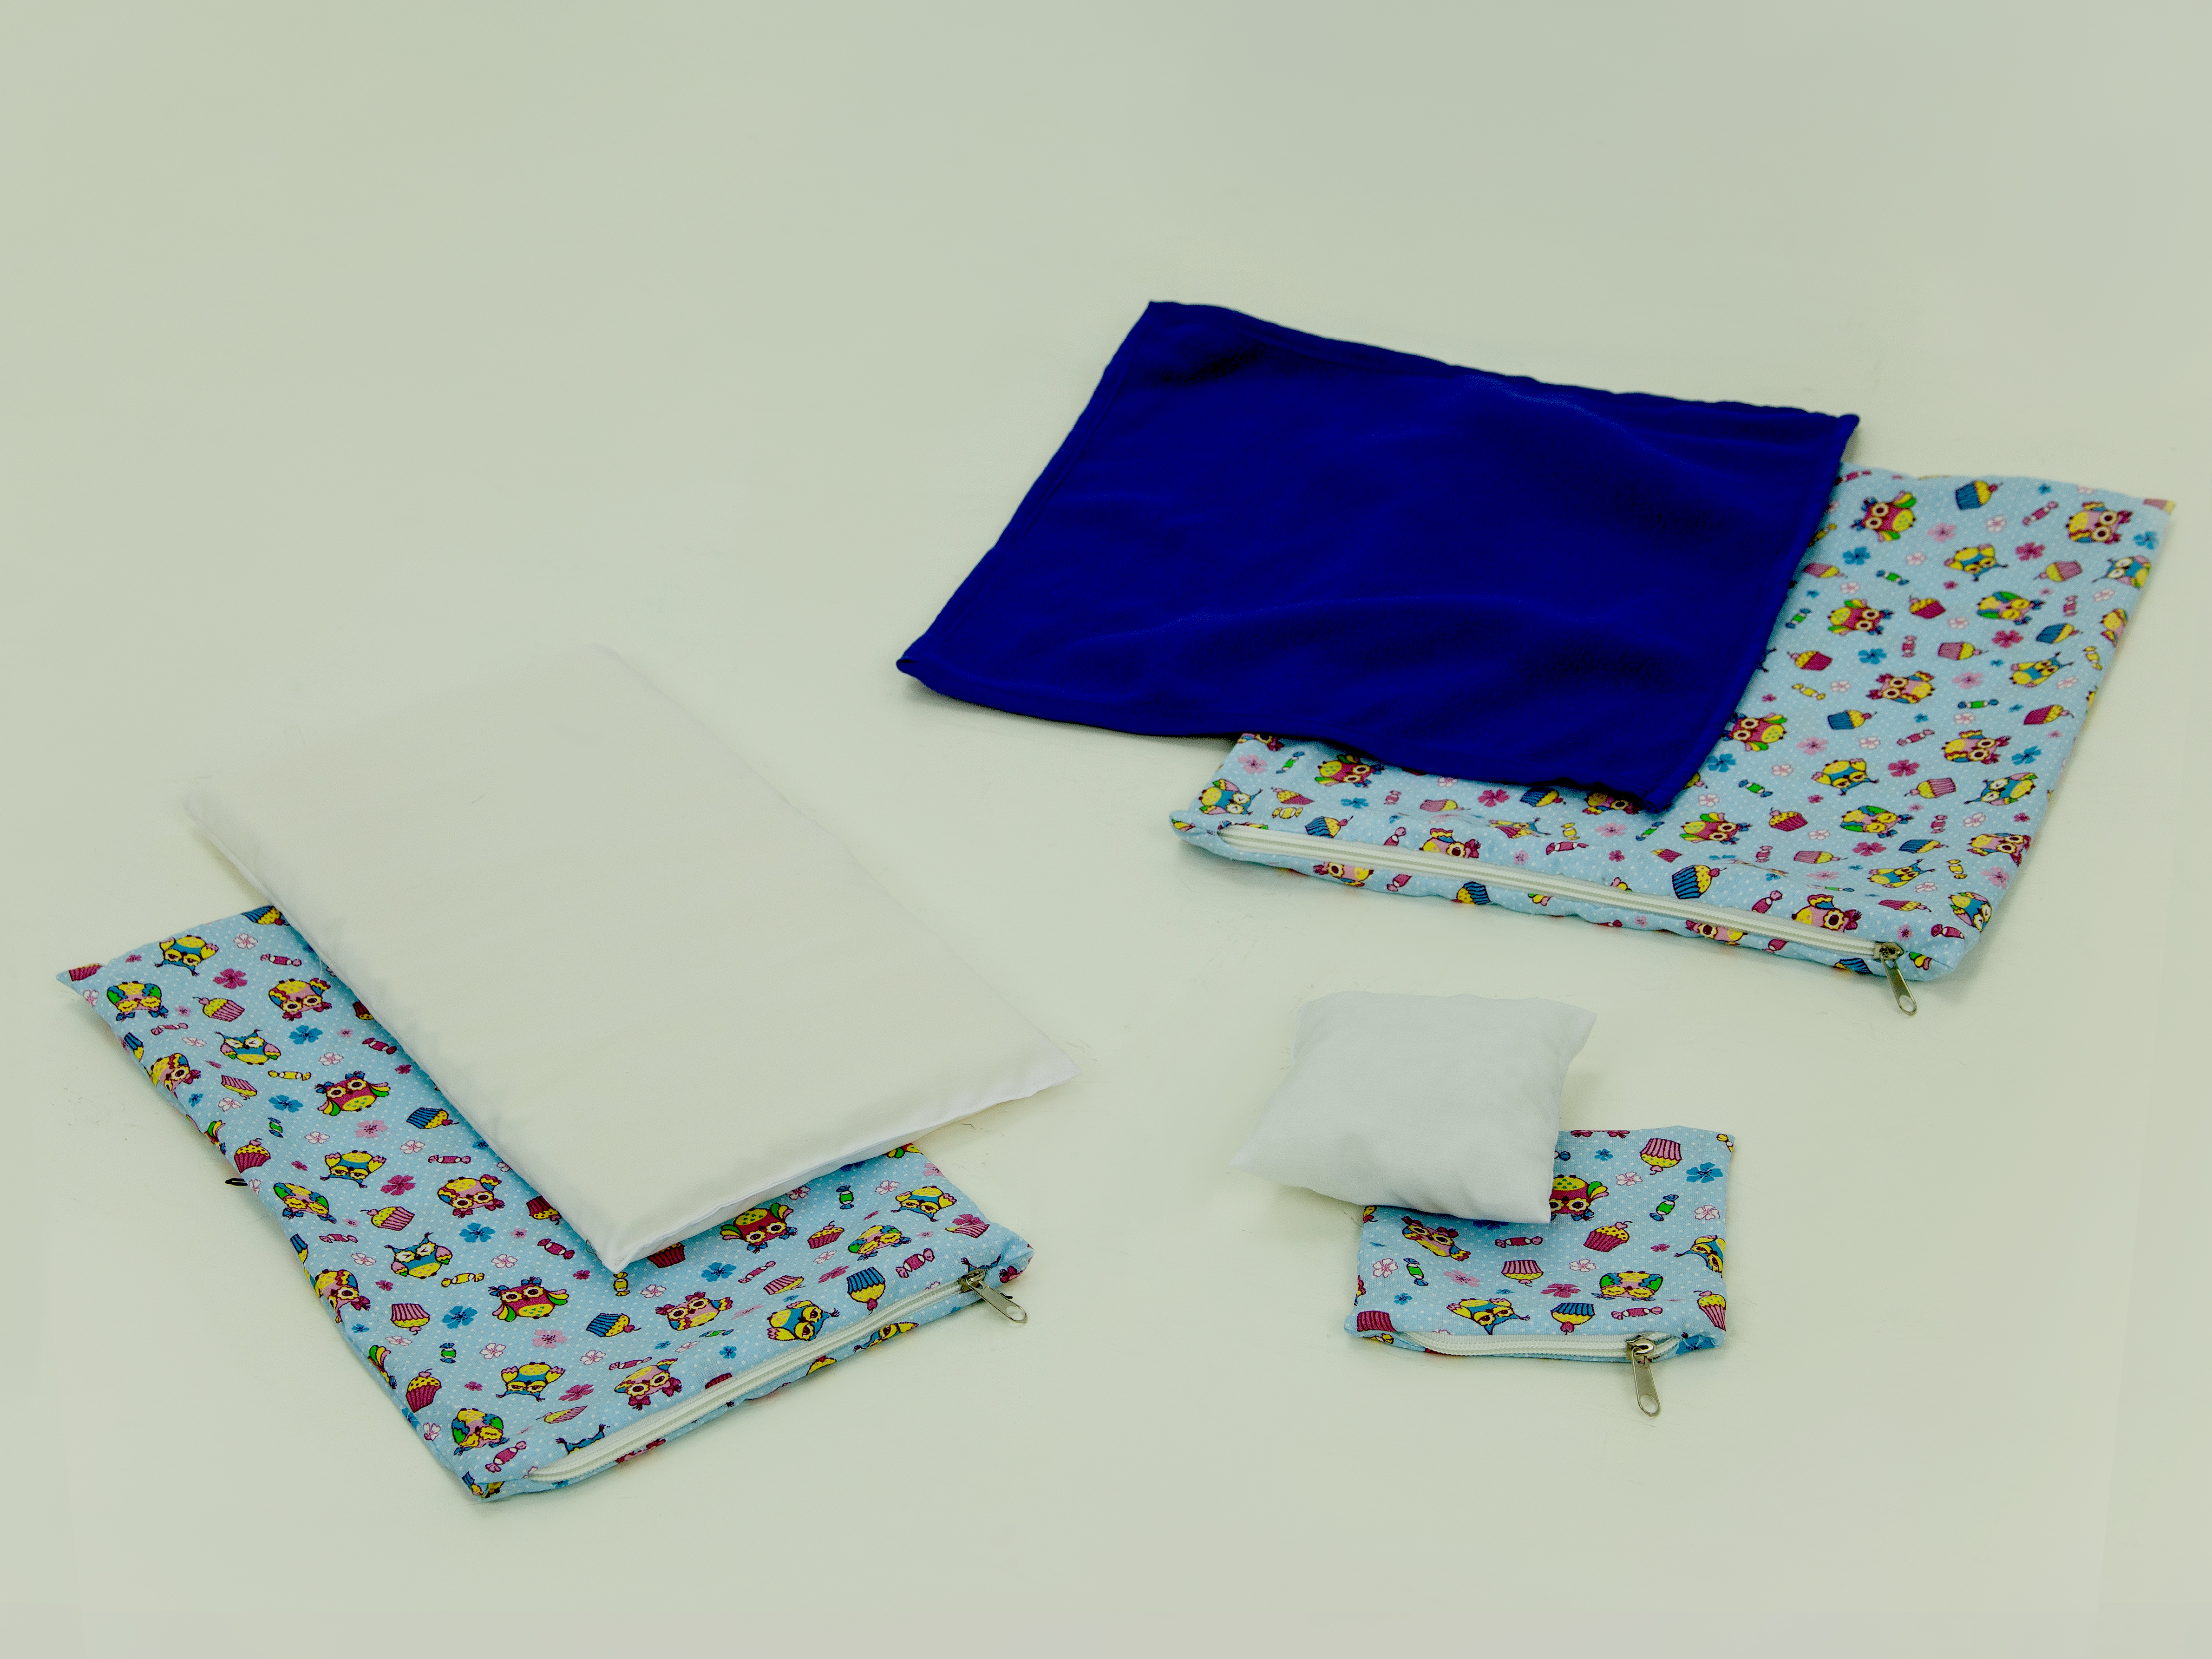 Комплект постельного белья для кроватки-качалки 1 из ткани с детским рисунком